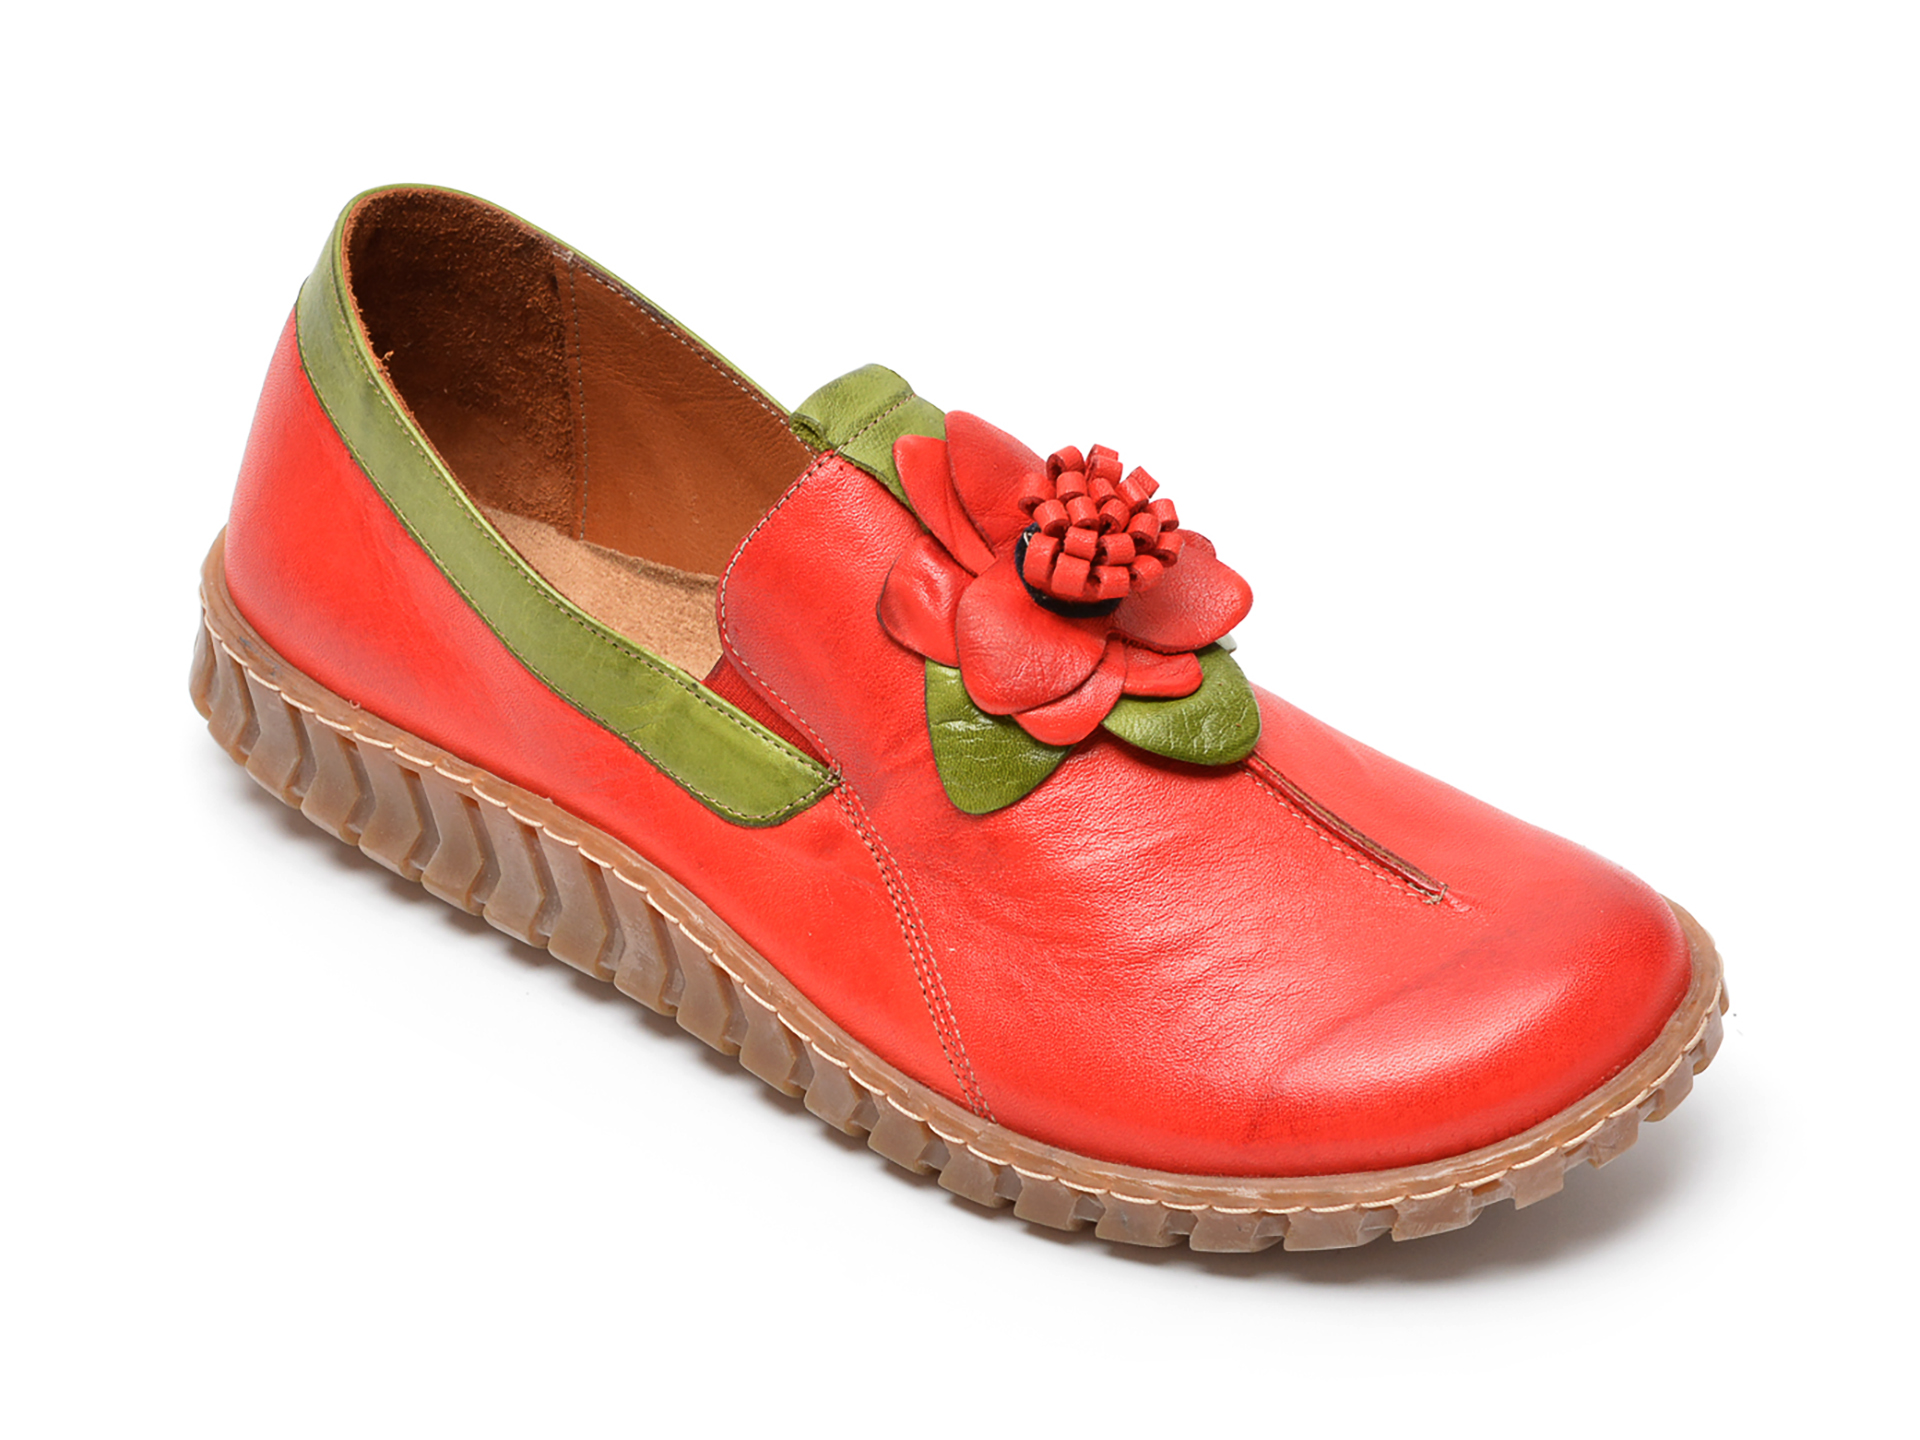 Pantofi FLAVIA PASSINI rosii, 3060, din piele naturala Flavia Passini